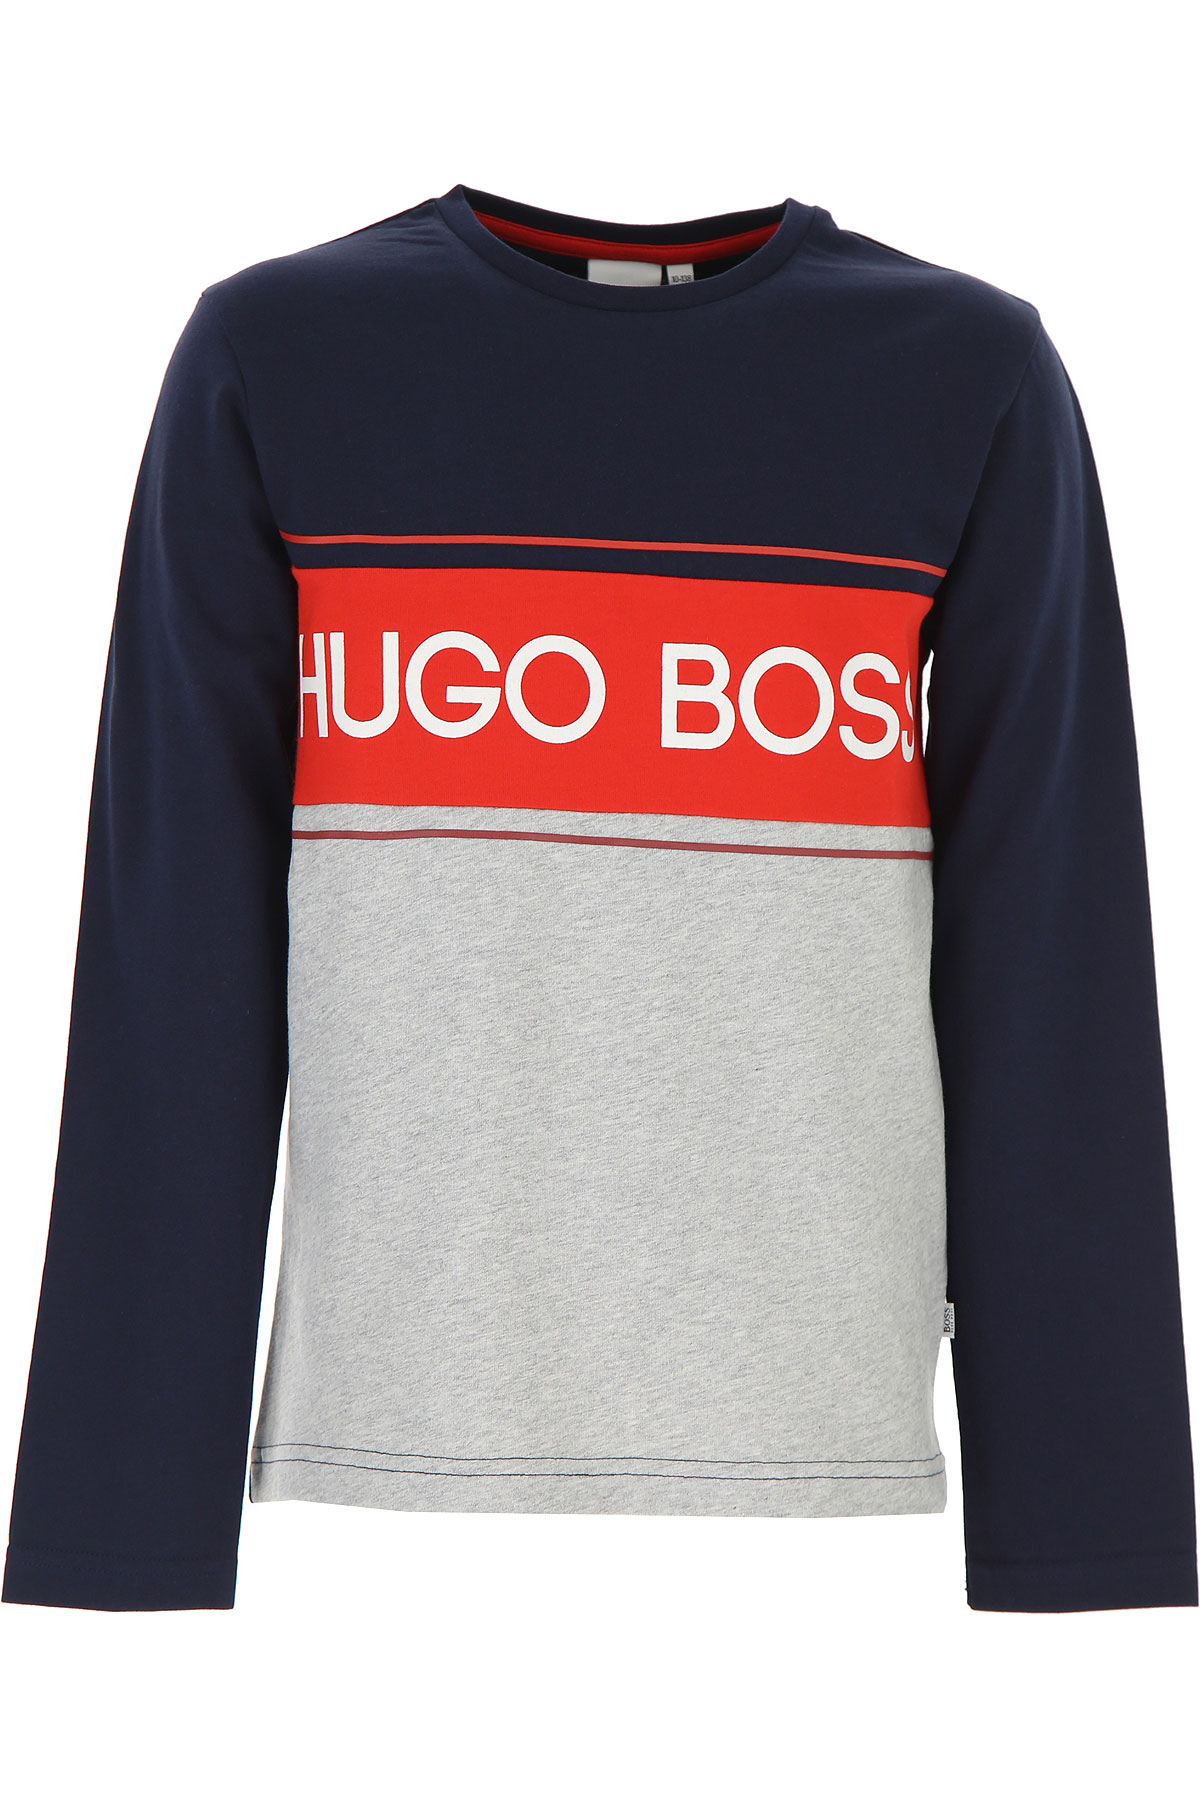 Hugo Boss Kinder T-Shirt für Jungen Günstig im Sale, Blau, Baumwolle, 2017, 12Y 14Y 16Y 4Y 5Y 6Y 8Y